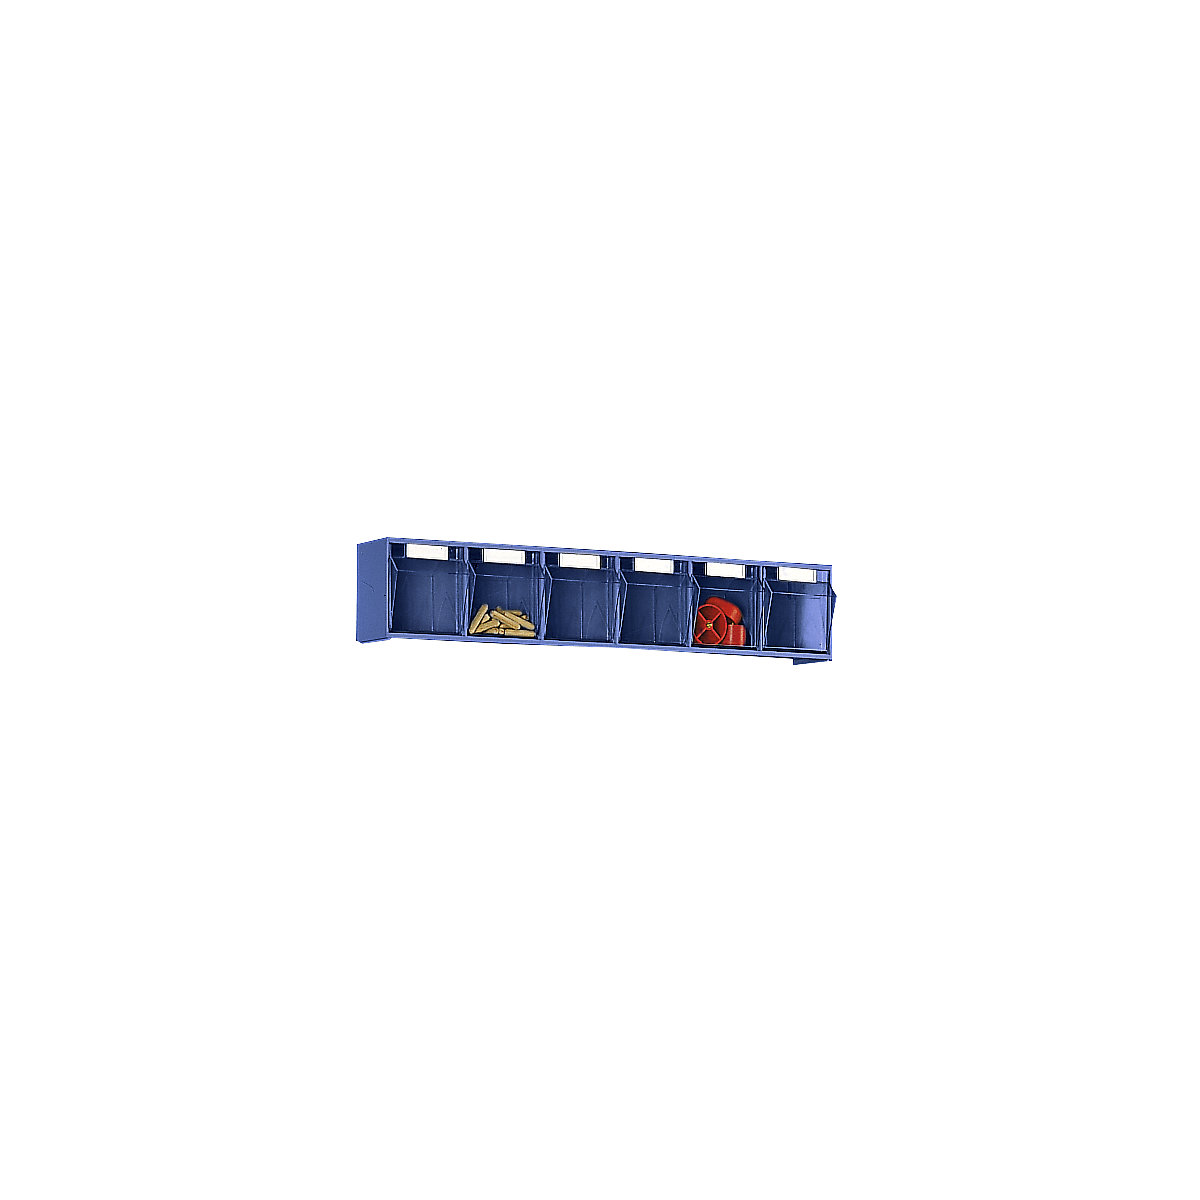 Système de bacs pivotants, casier h x l x p 113 x 600 x 91 mm, 6 bacs bleus-7